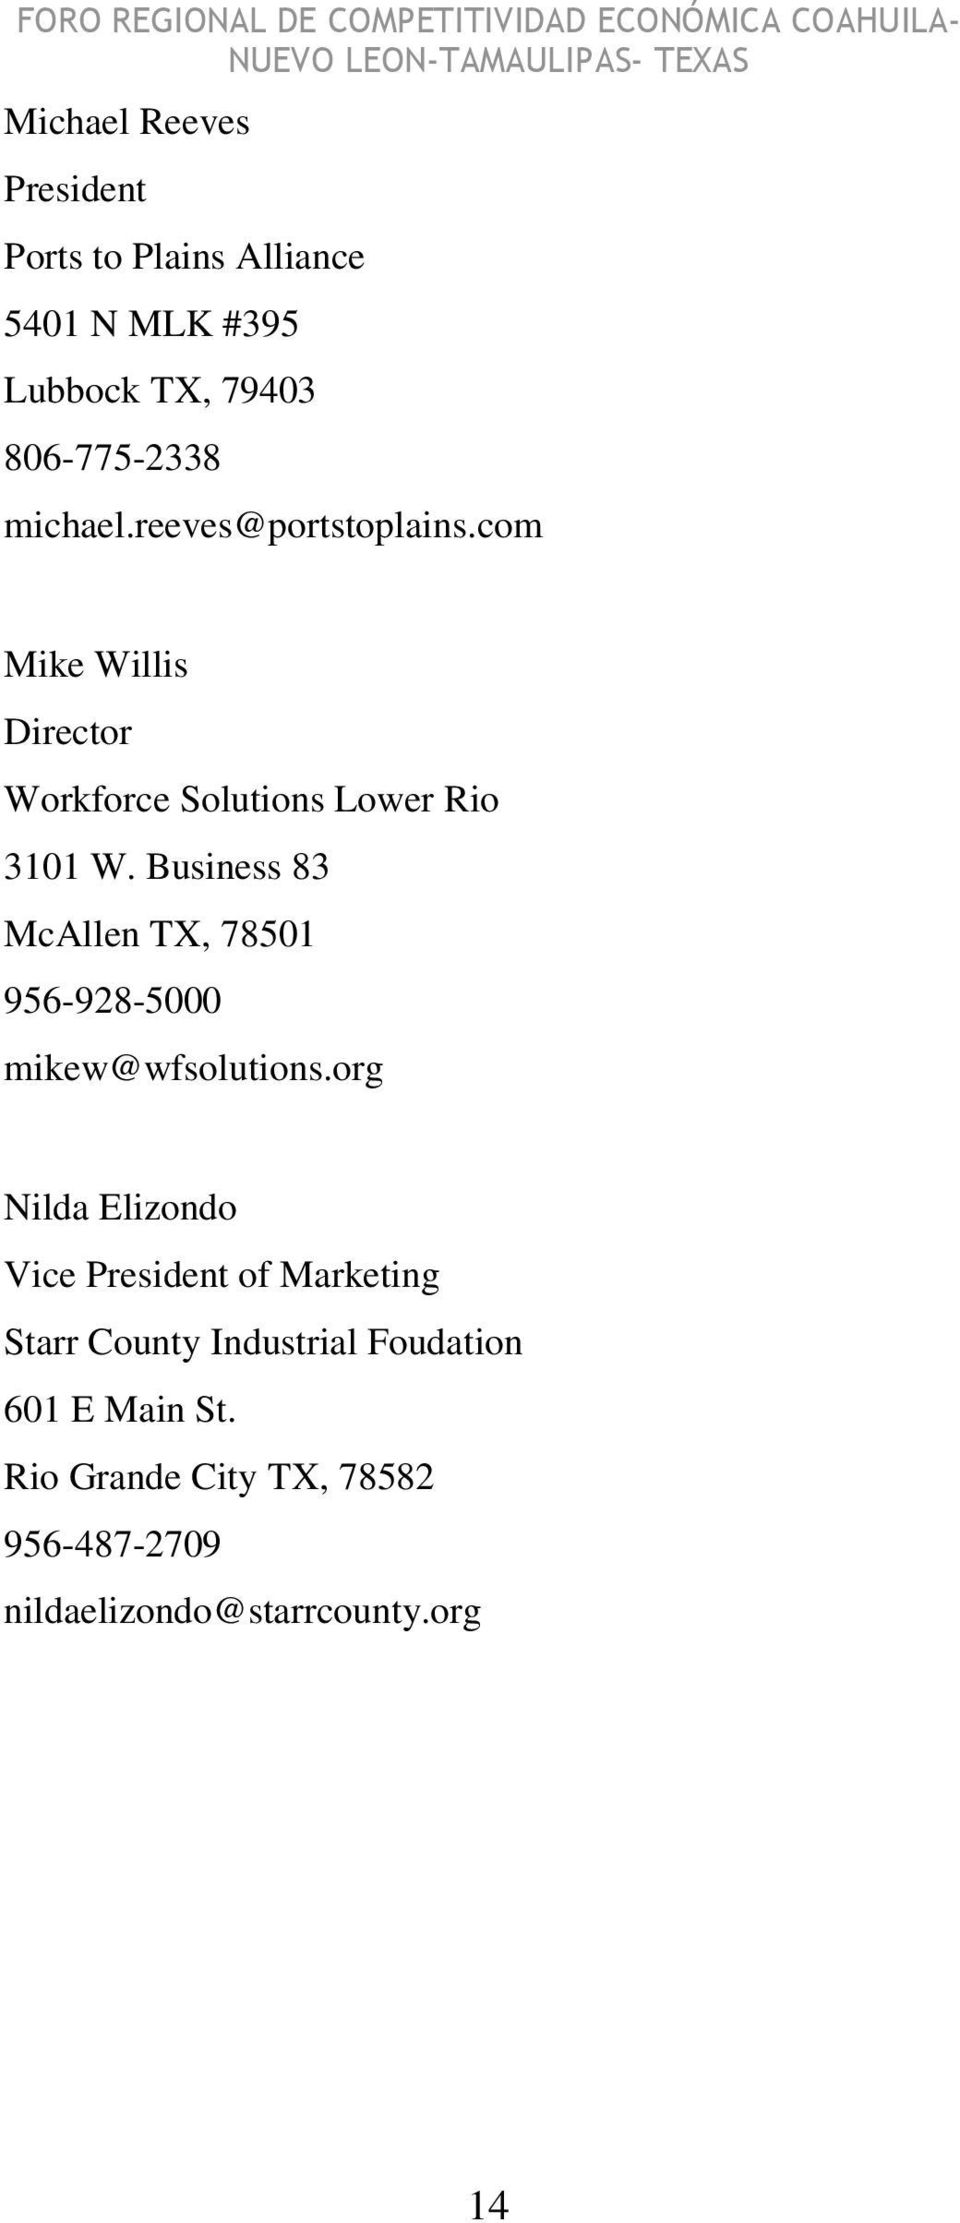 Business 83 McAllen TX, 78501 956-928-5000 mikew@wfsolutions.